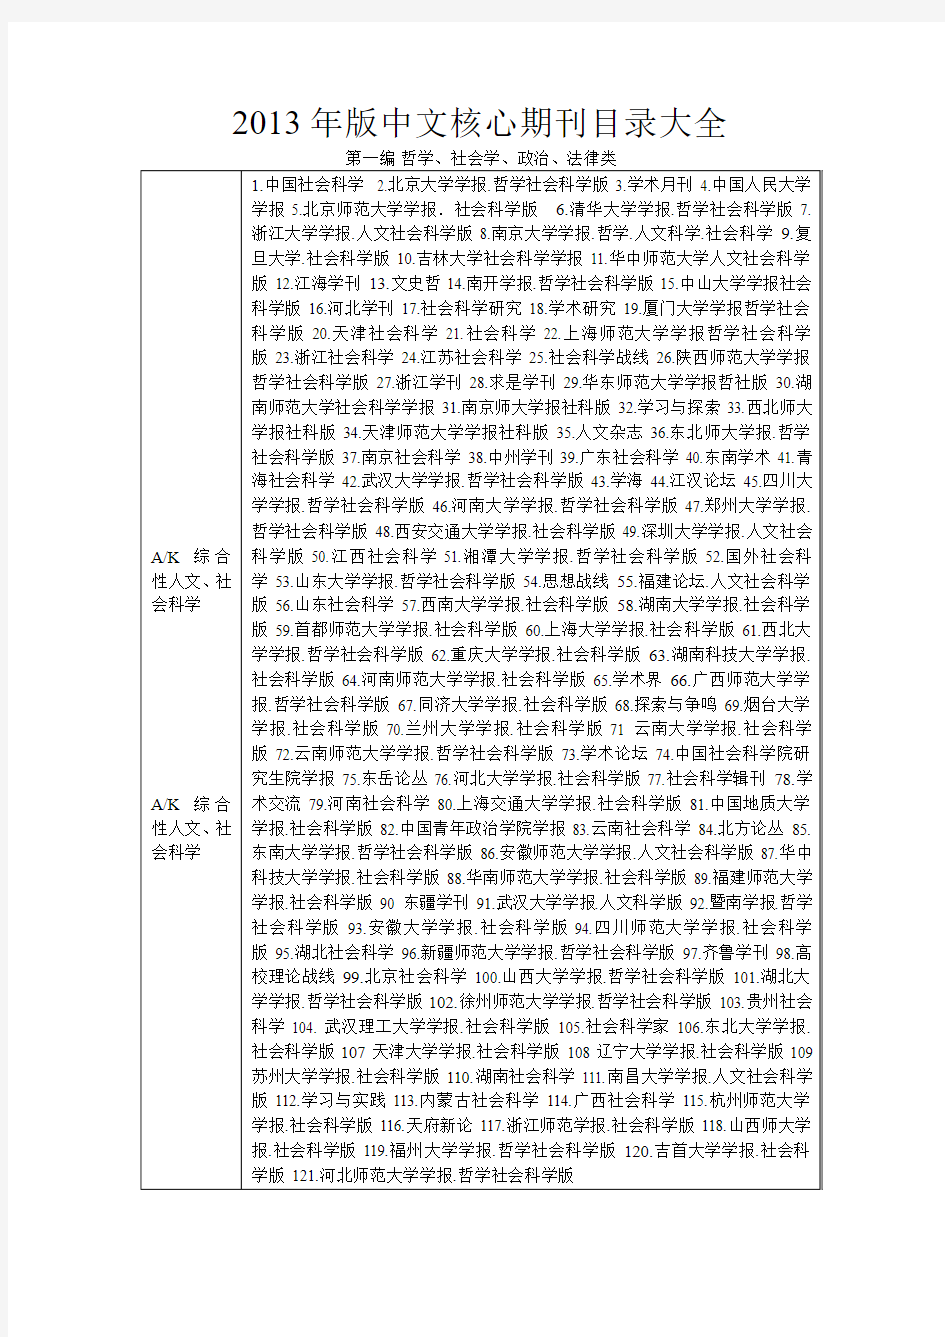 2013年最新版中文核心期刊目录大全